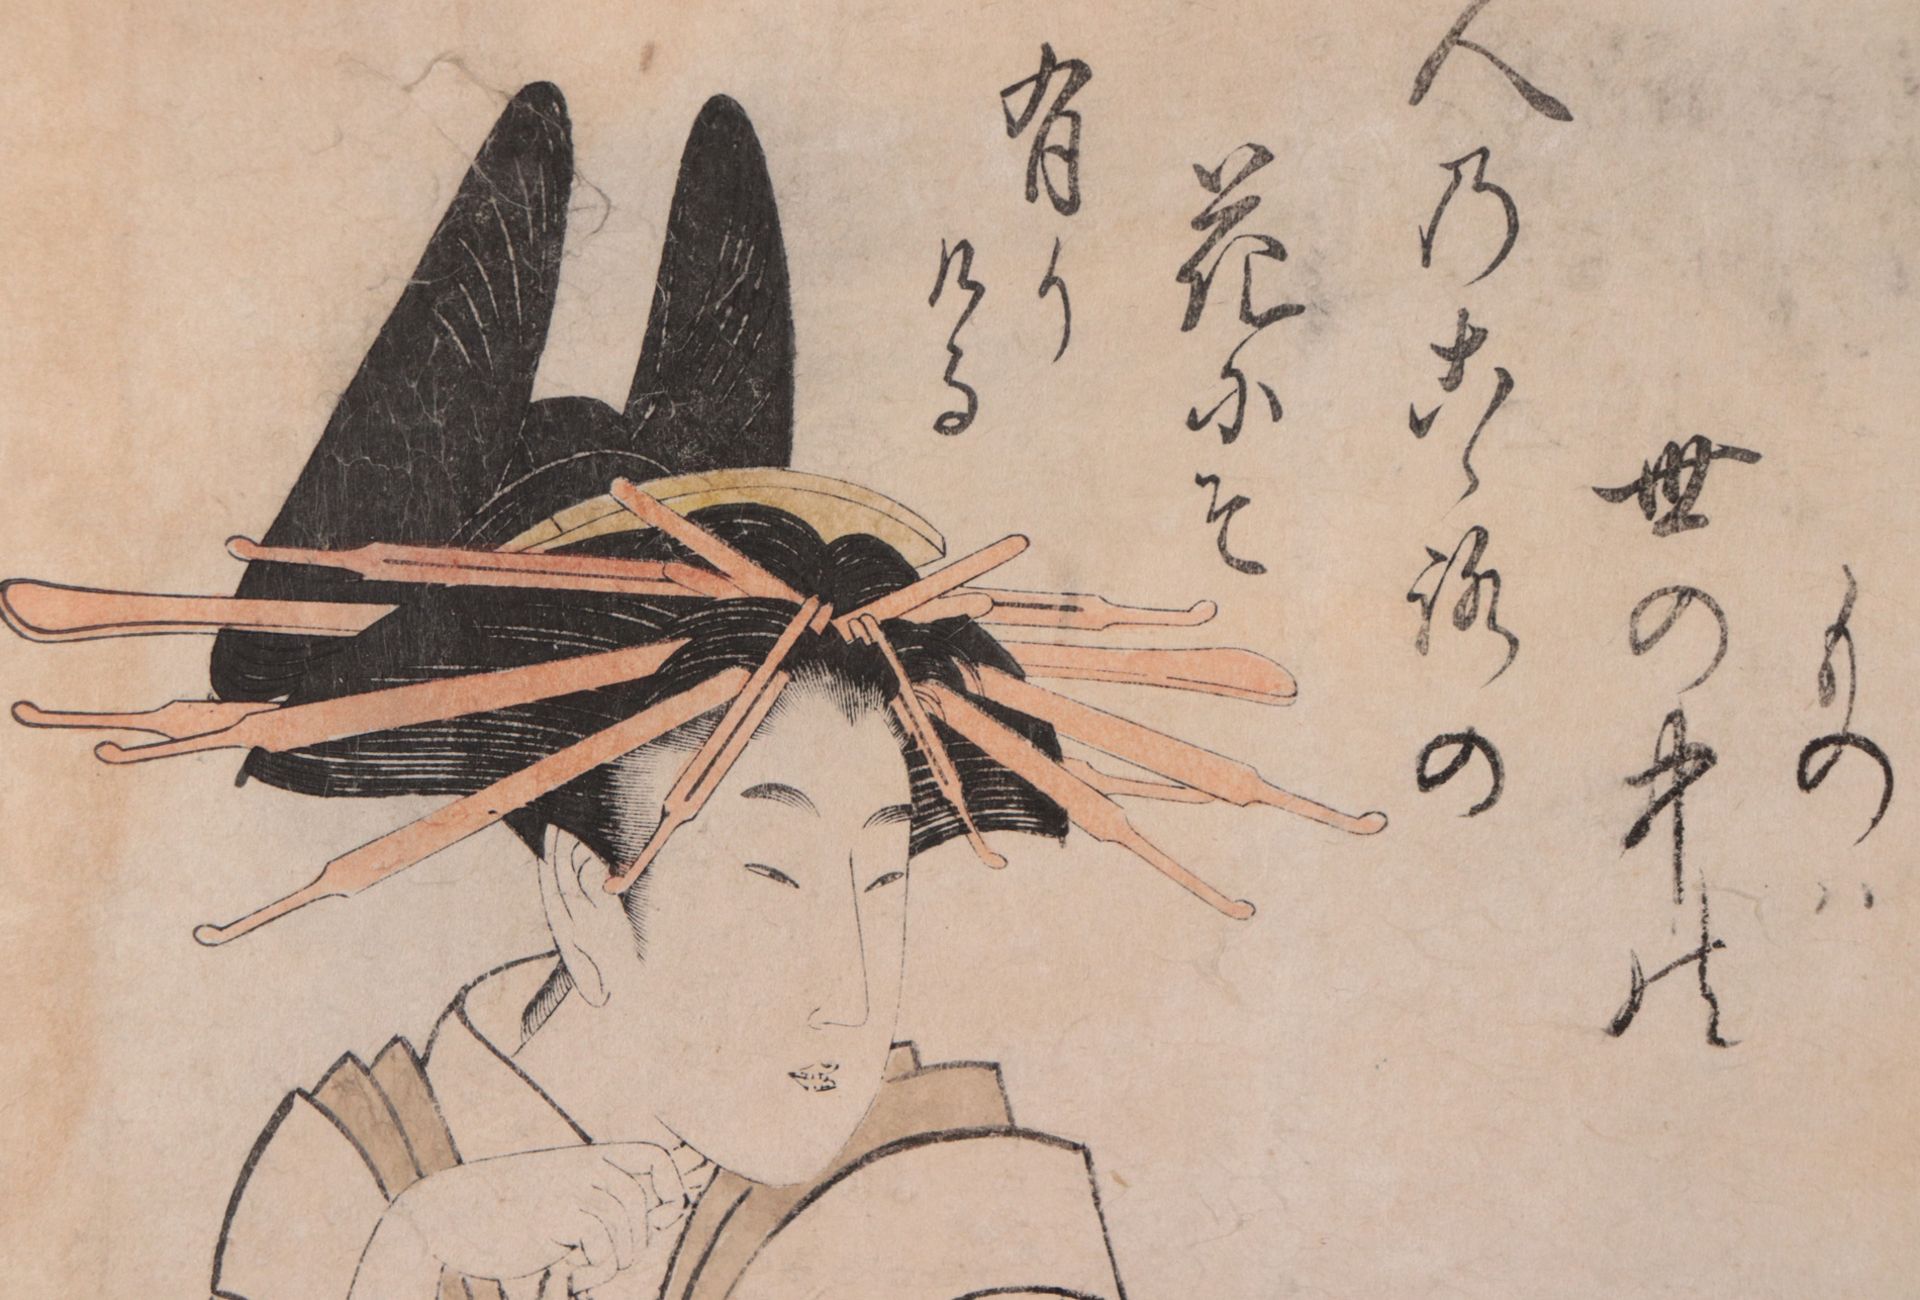 Utamaro, Kitagawa - Image 2 of 3